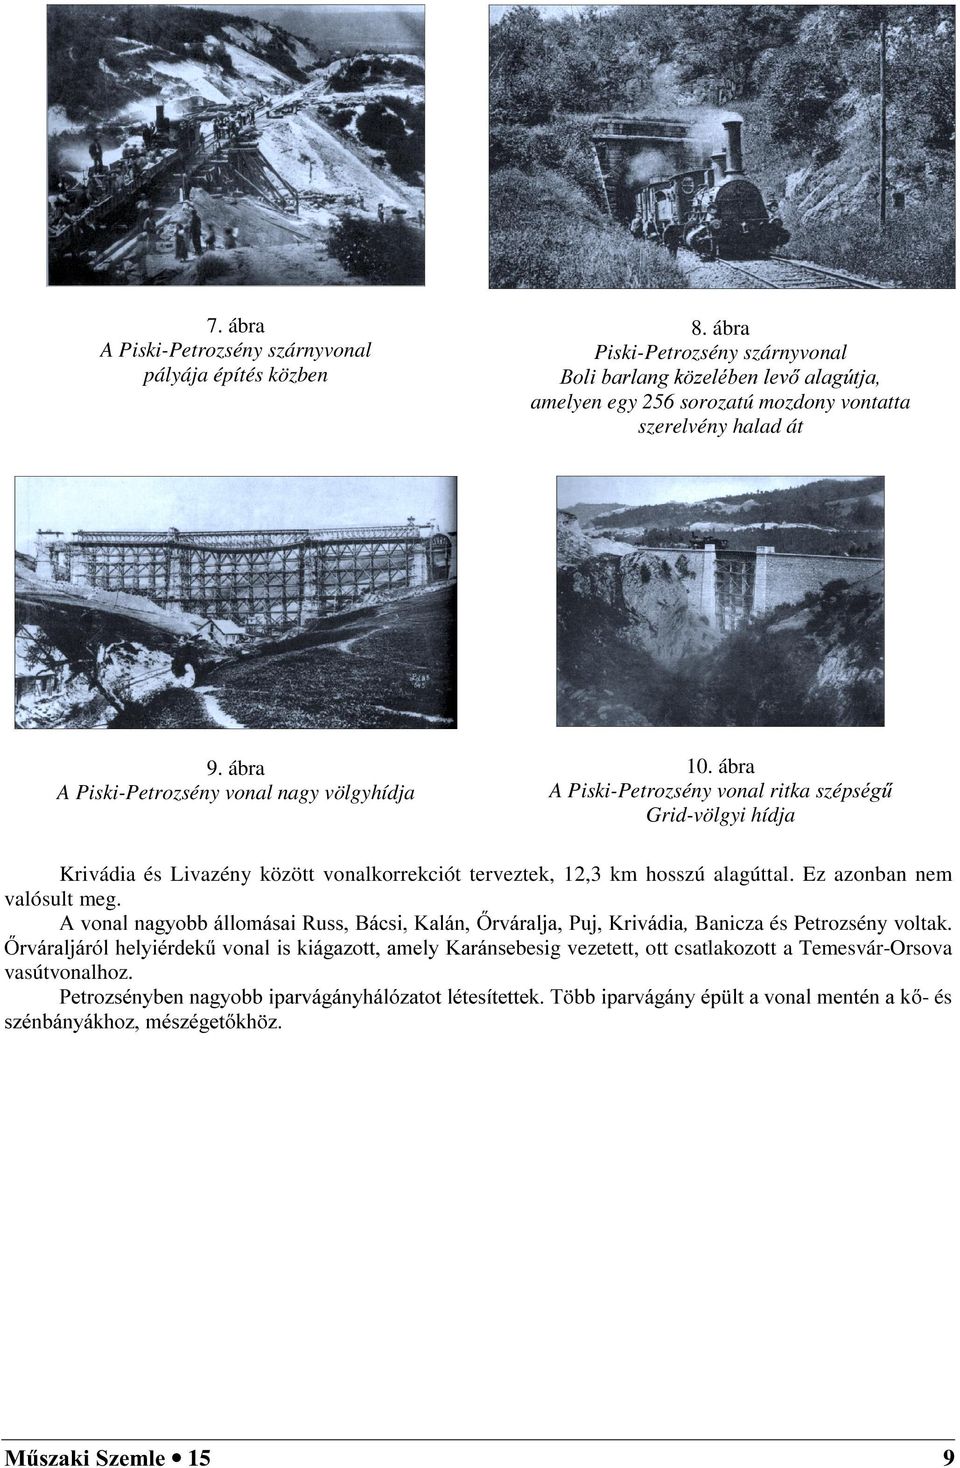 ábra A PiskiPetrozsény vonal ritka szépspj& Gridvölgyi hídja Krivádia és Livazény között vonalkorrekciót terveztek,,3 km hosszú alagúttal. Ez azonban nem valósult meg.